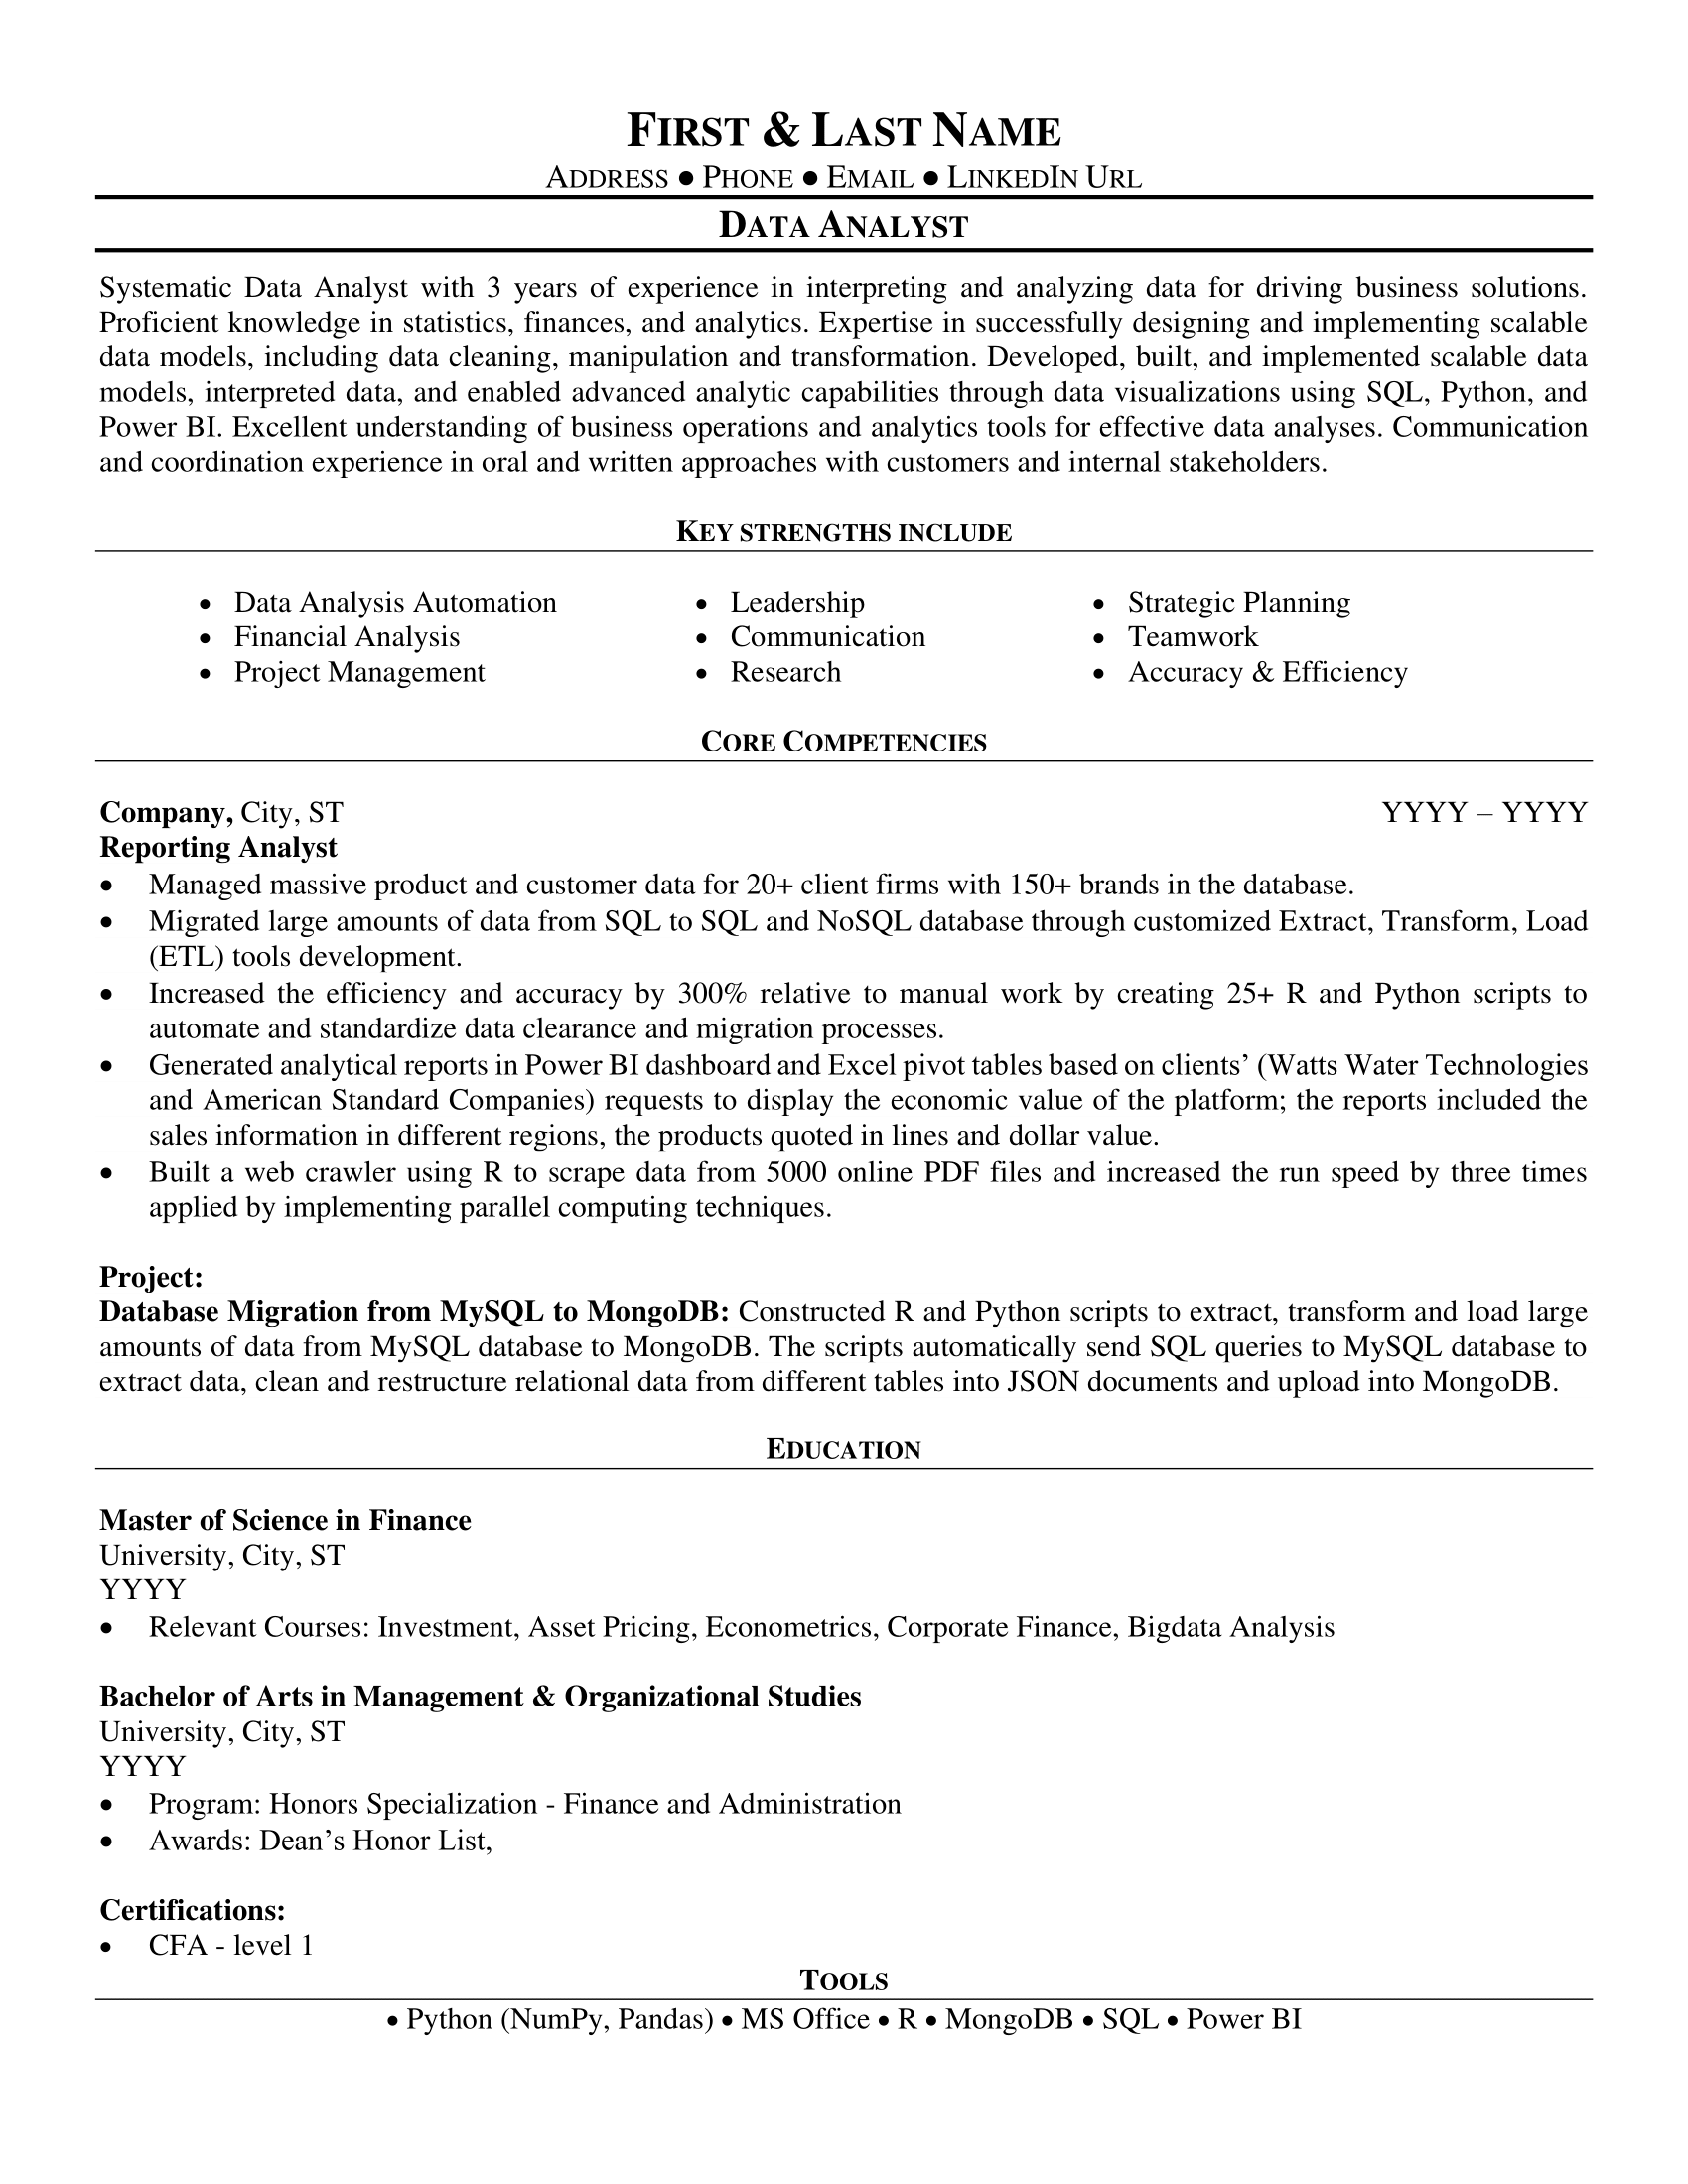 data analyst job duties on resume